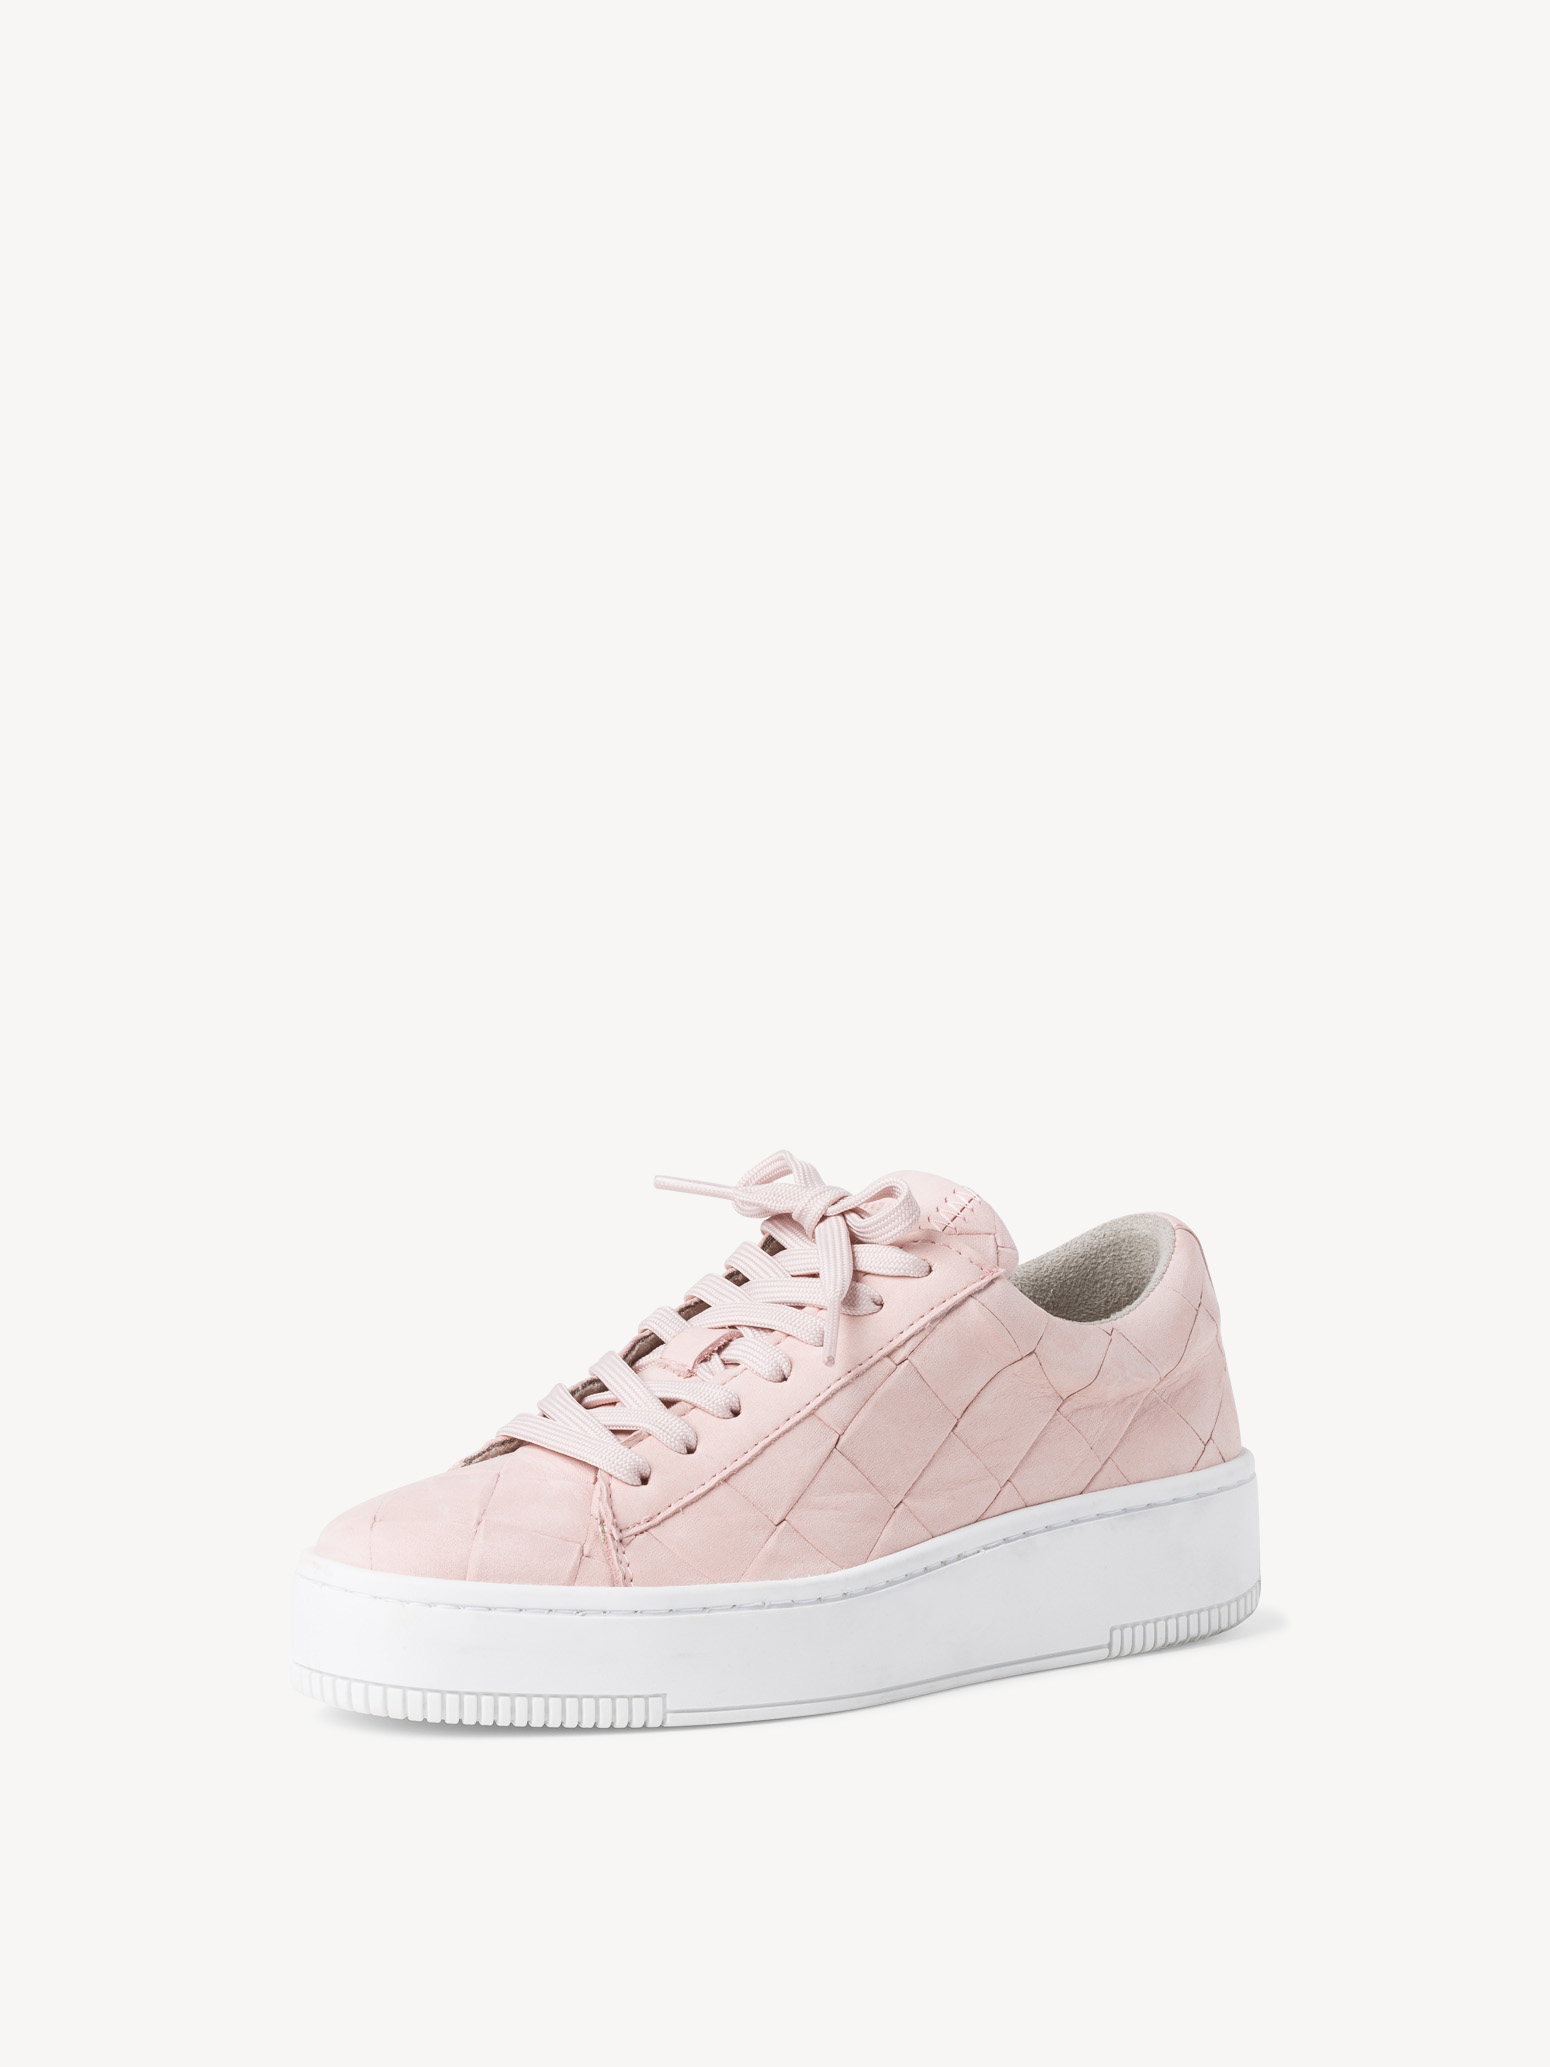 Ботинки на шнурках женские (розовый) - изображение №1